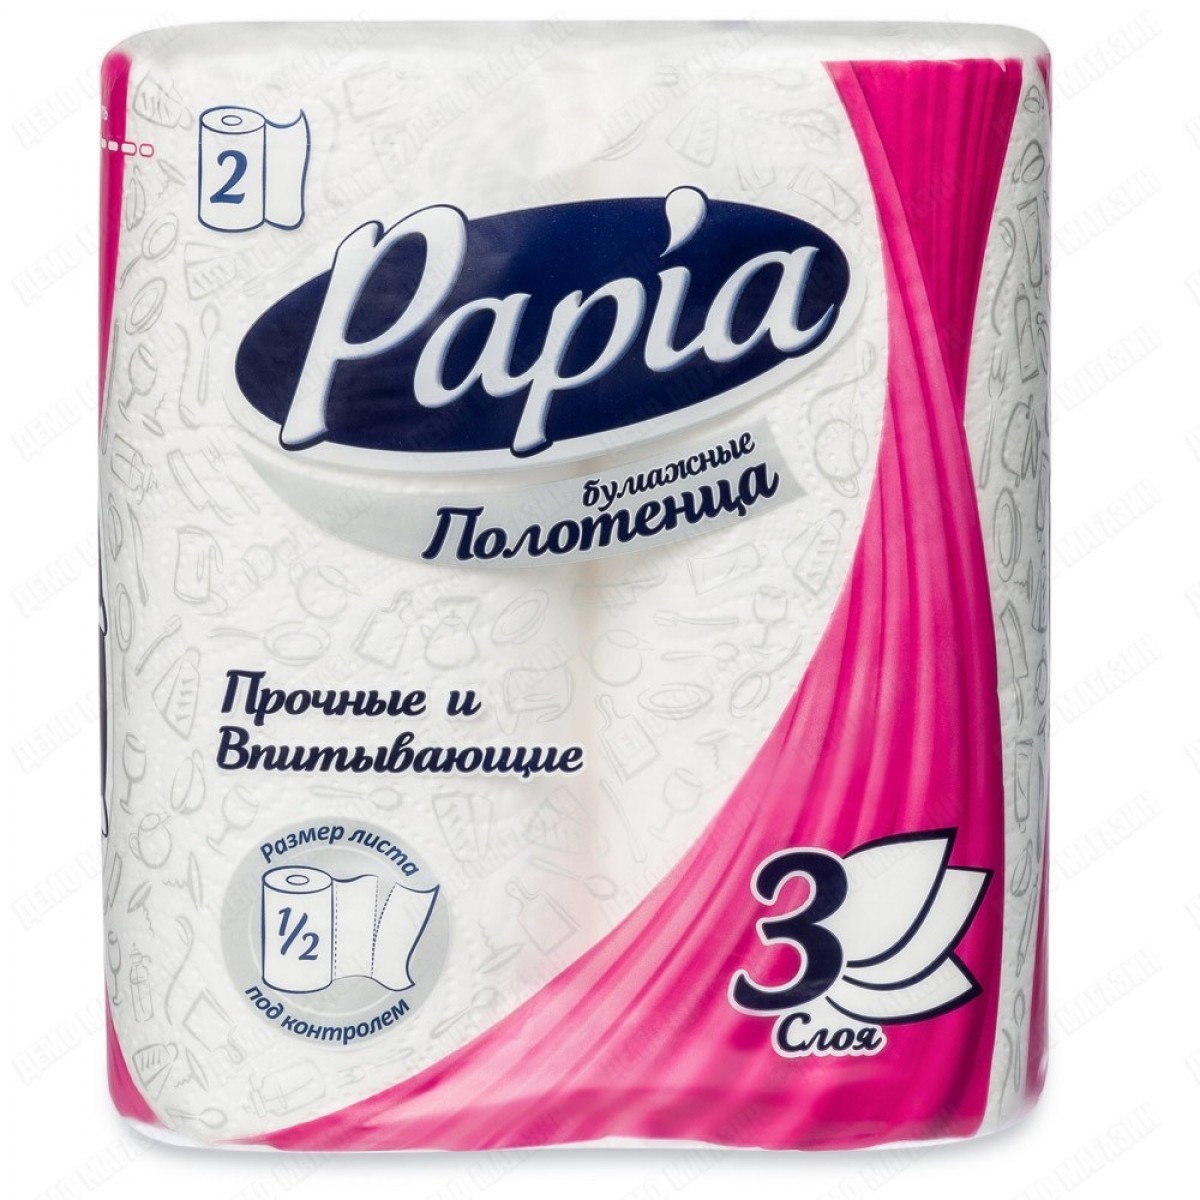 Озон бумажные полотенца. Полотенце бумажное Папия макси 3 слойная. Papia бумажные полотенца 3 слоя 2 +1. Бум полотенца Papia Maxi 3 сл 2 рул. Бумажные полотенца папиа 3сл 4рул.